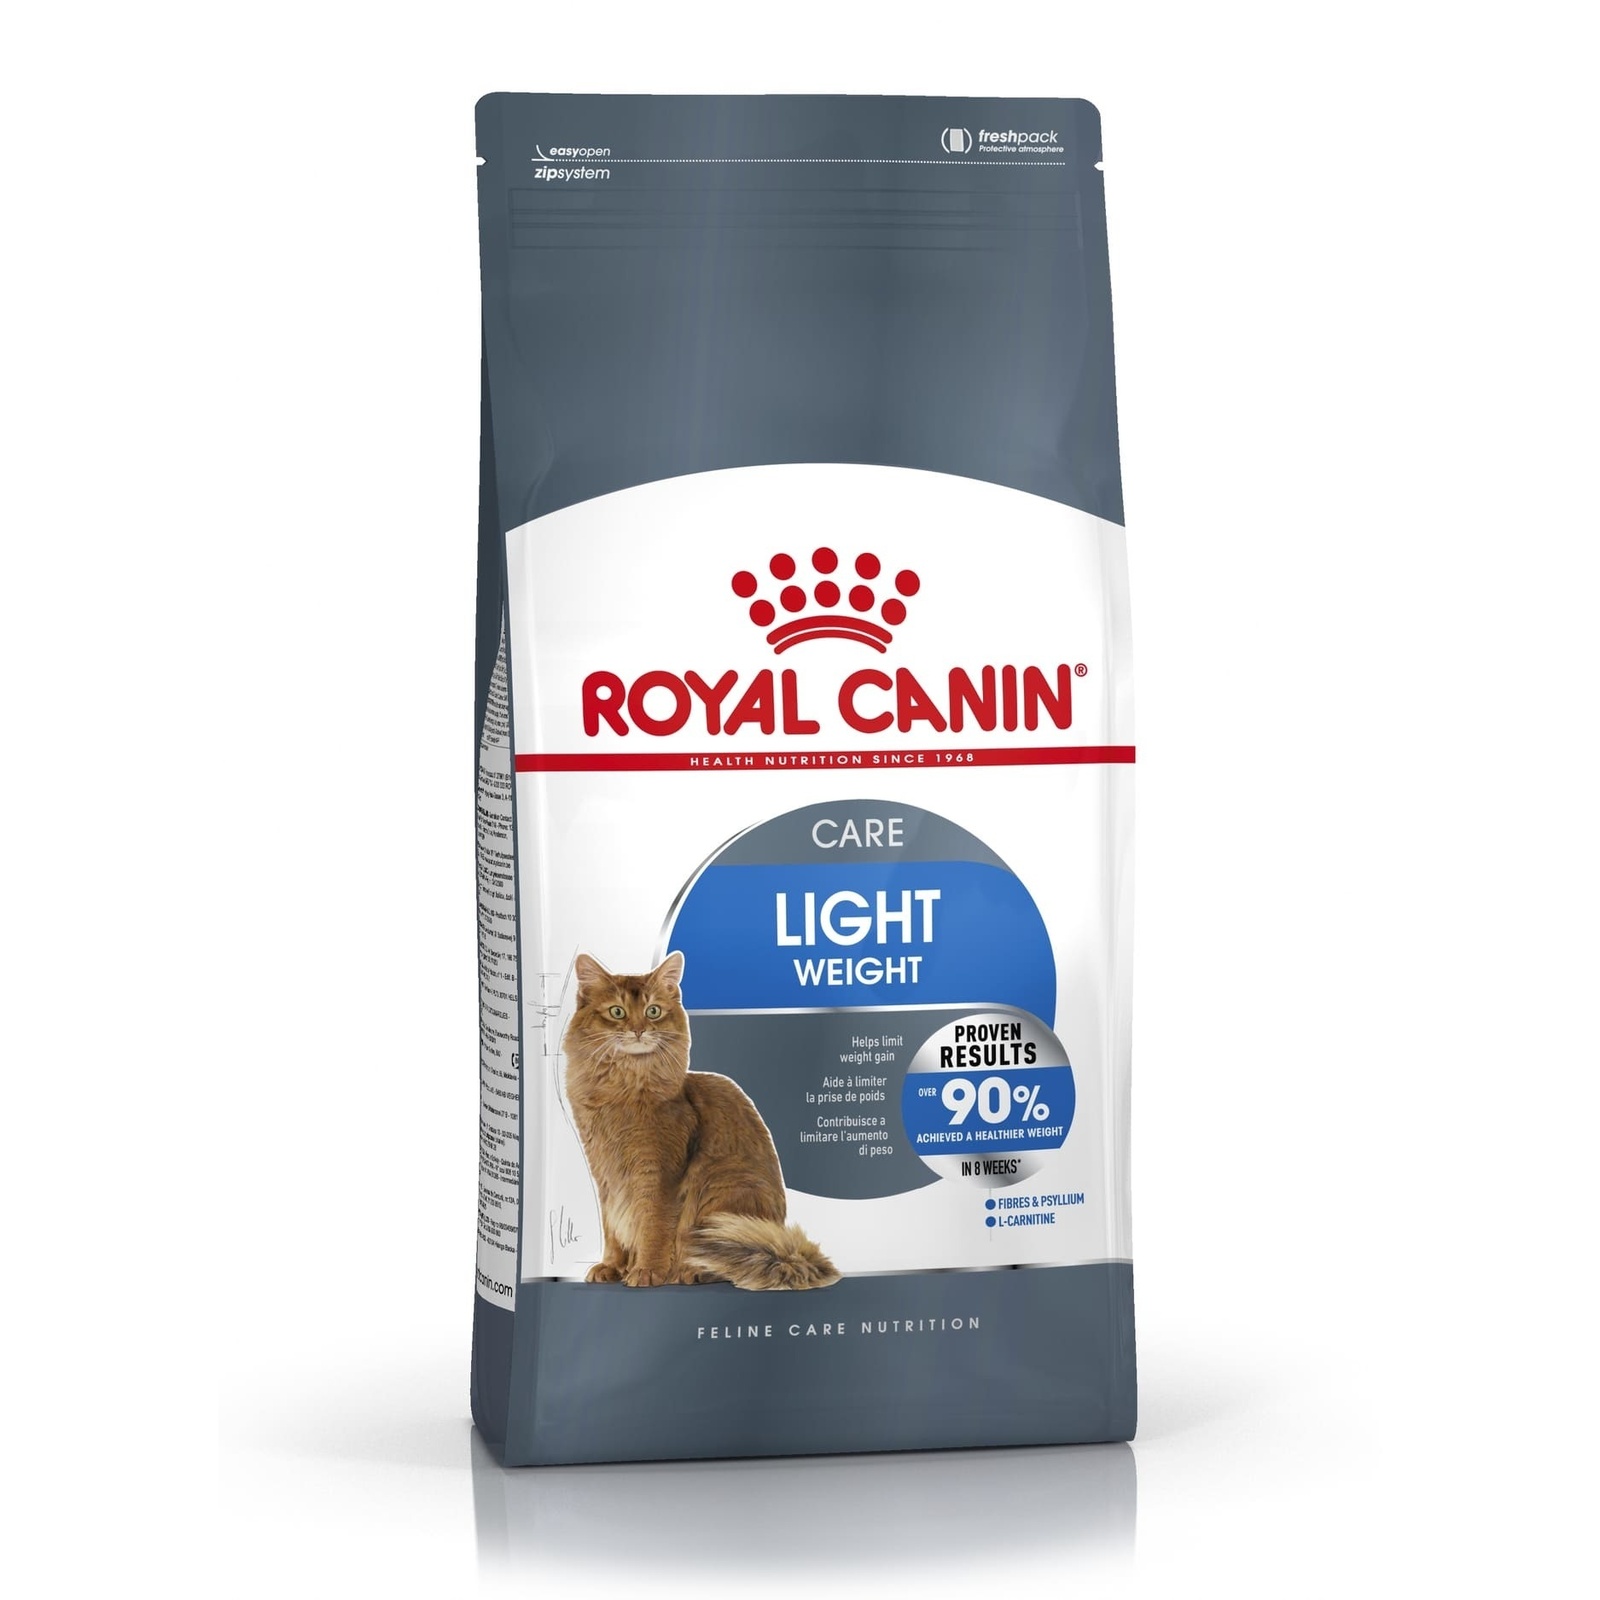 Royal Canin Корм Royal Canin для кошек от 1 года Профилактика избыточного веса (8 кг) royal canin light weight care полнорационный сухой корм для взрослых кошек для профилактики лишнего веса